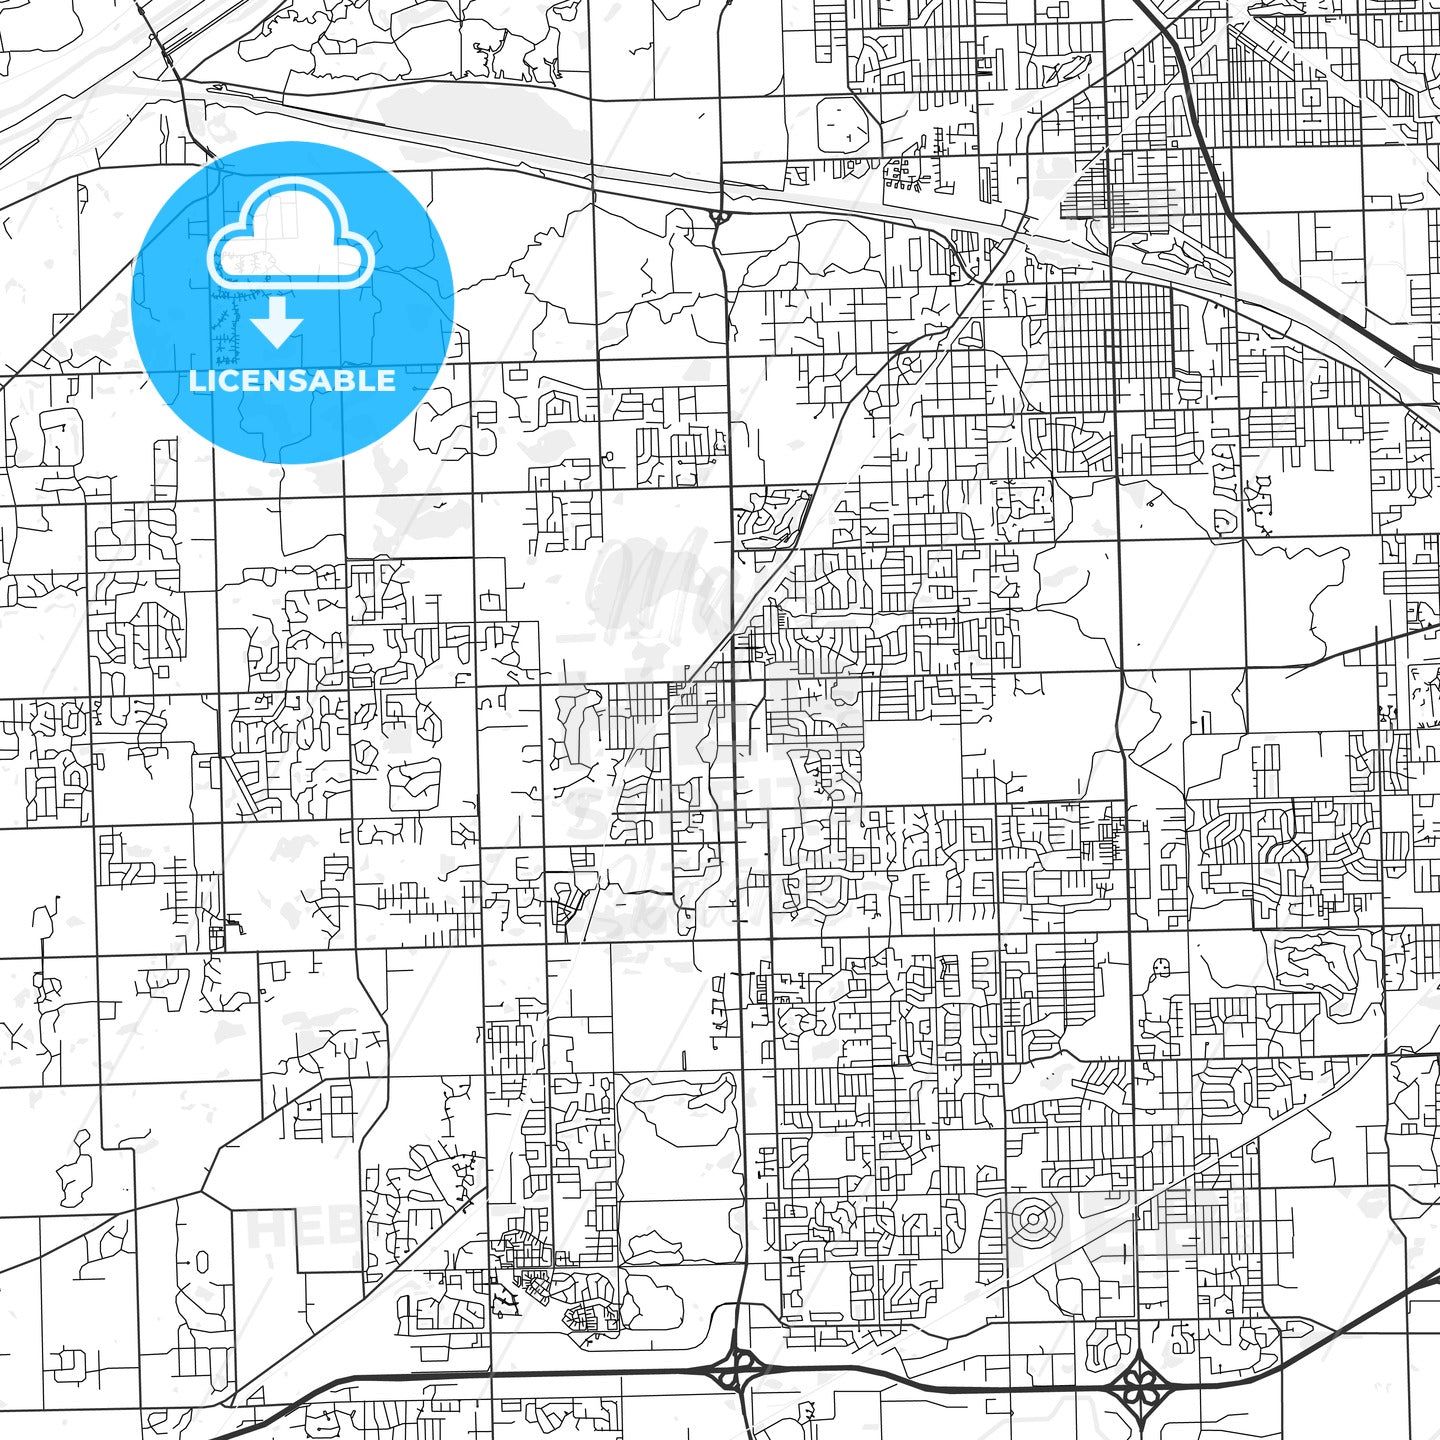 Orland Park, Illinois - Area Map - Light